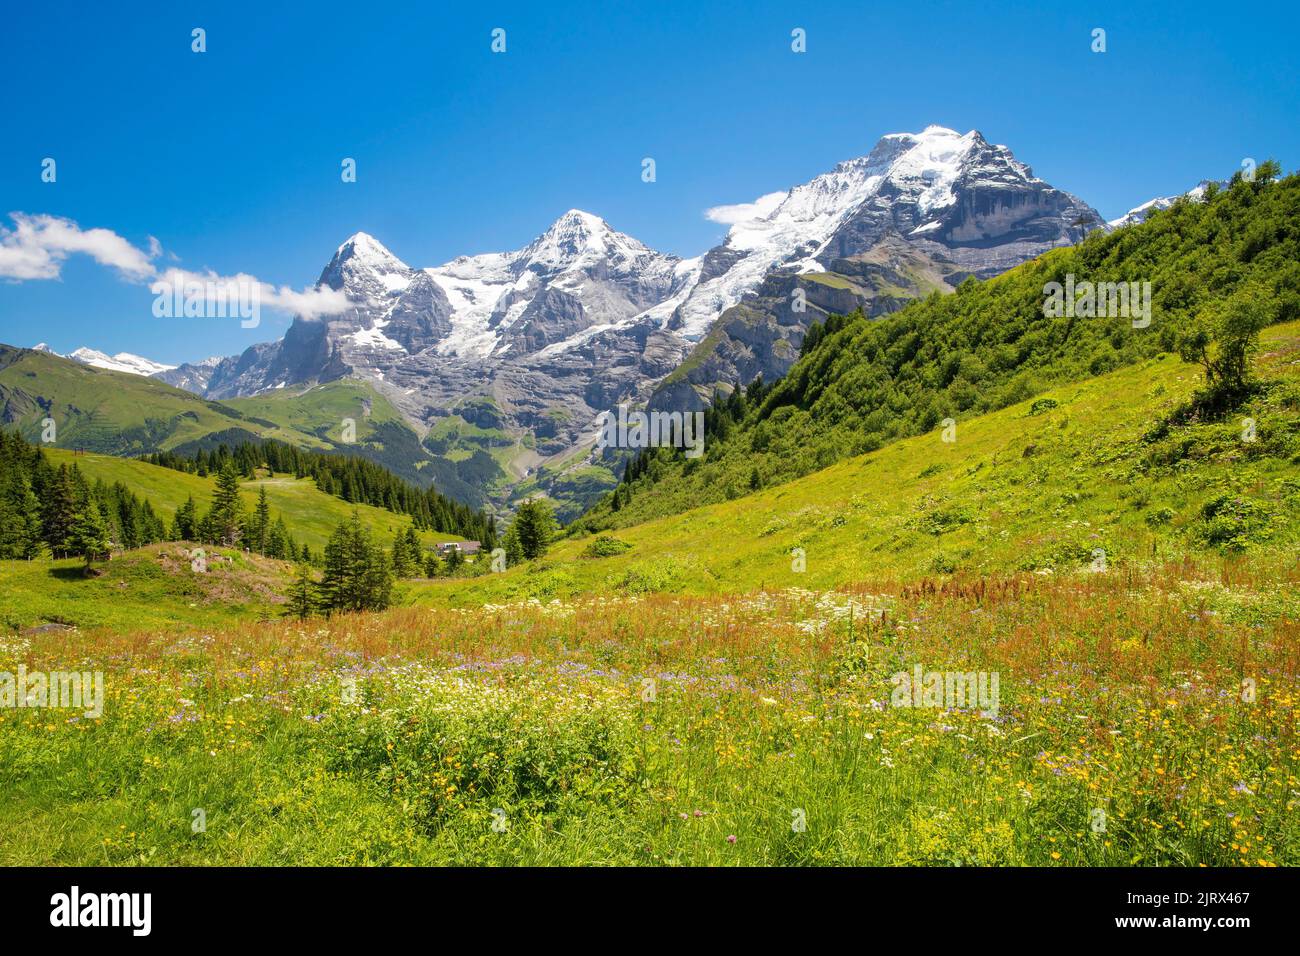 Le panorama des alpes bernoises avec les sommets de la Jungfrau, du Monch et de l'Eiger. Banque D'Images